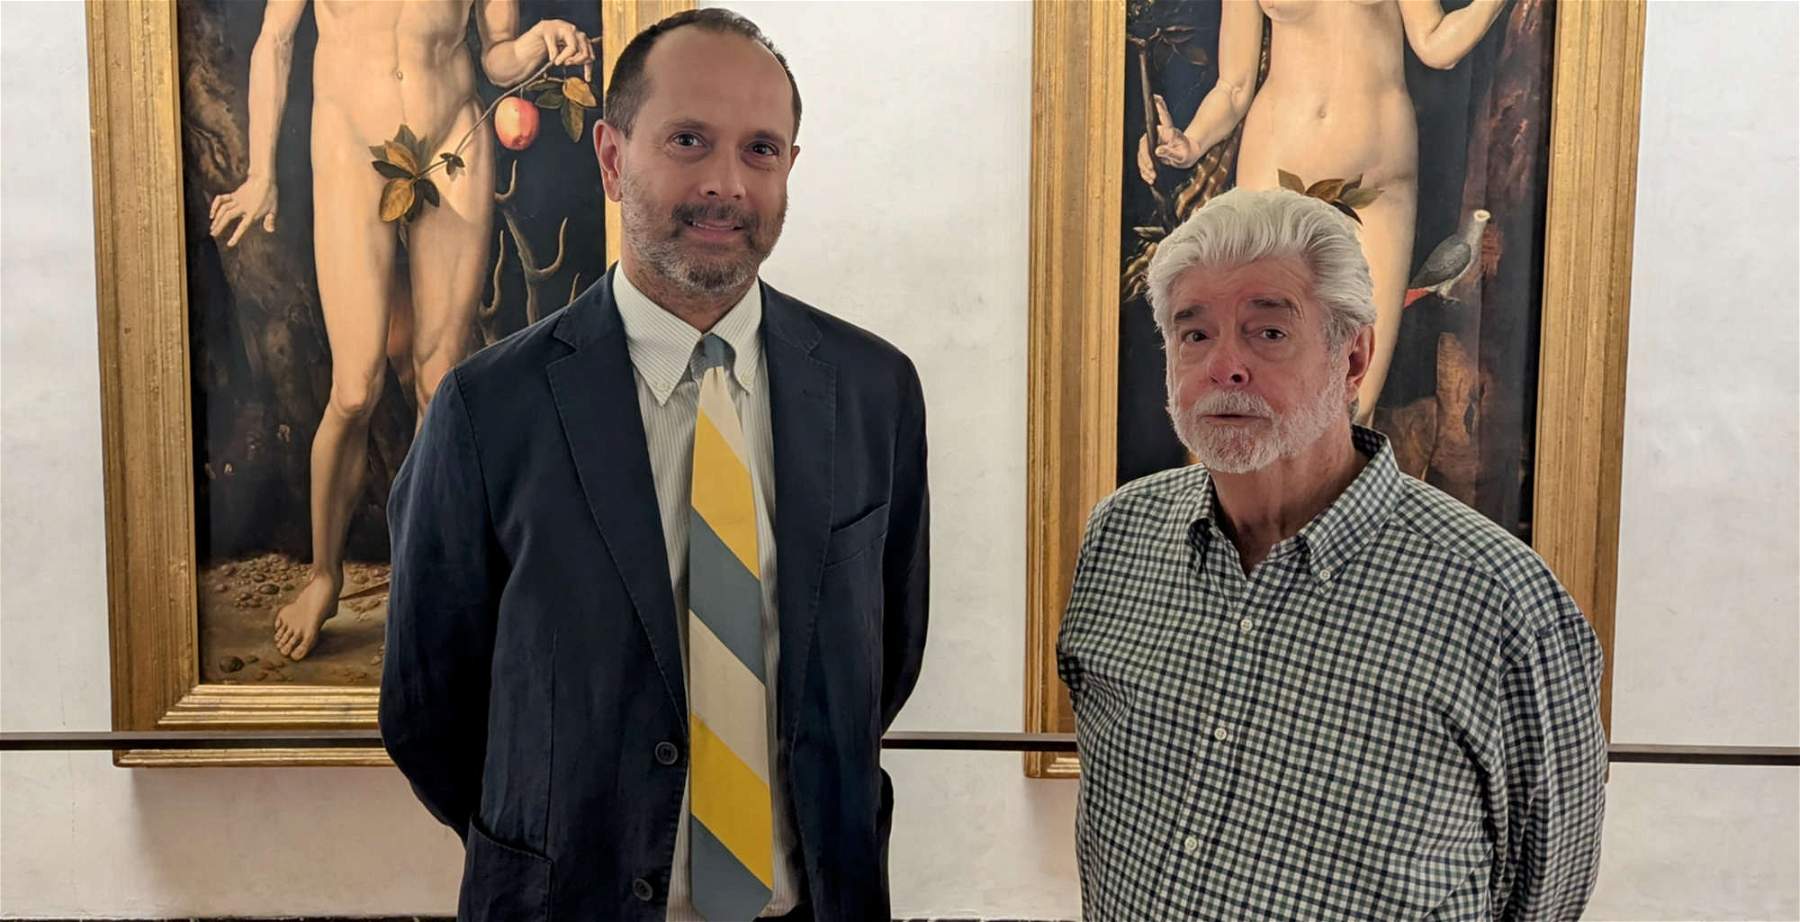 George Lucas en los Uffizi: visita al museo del director de Star Wars